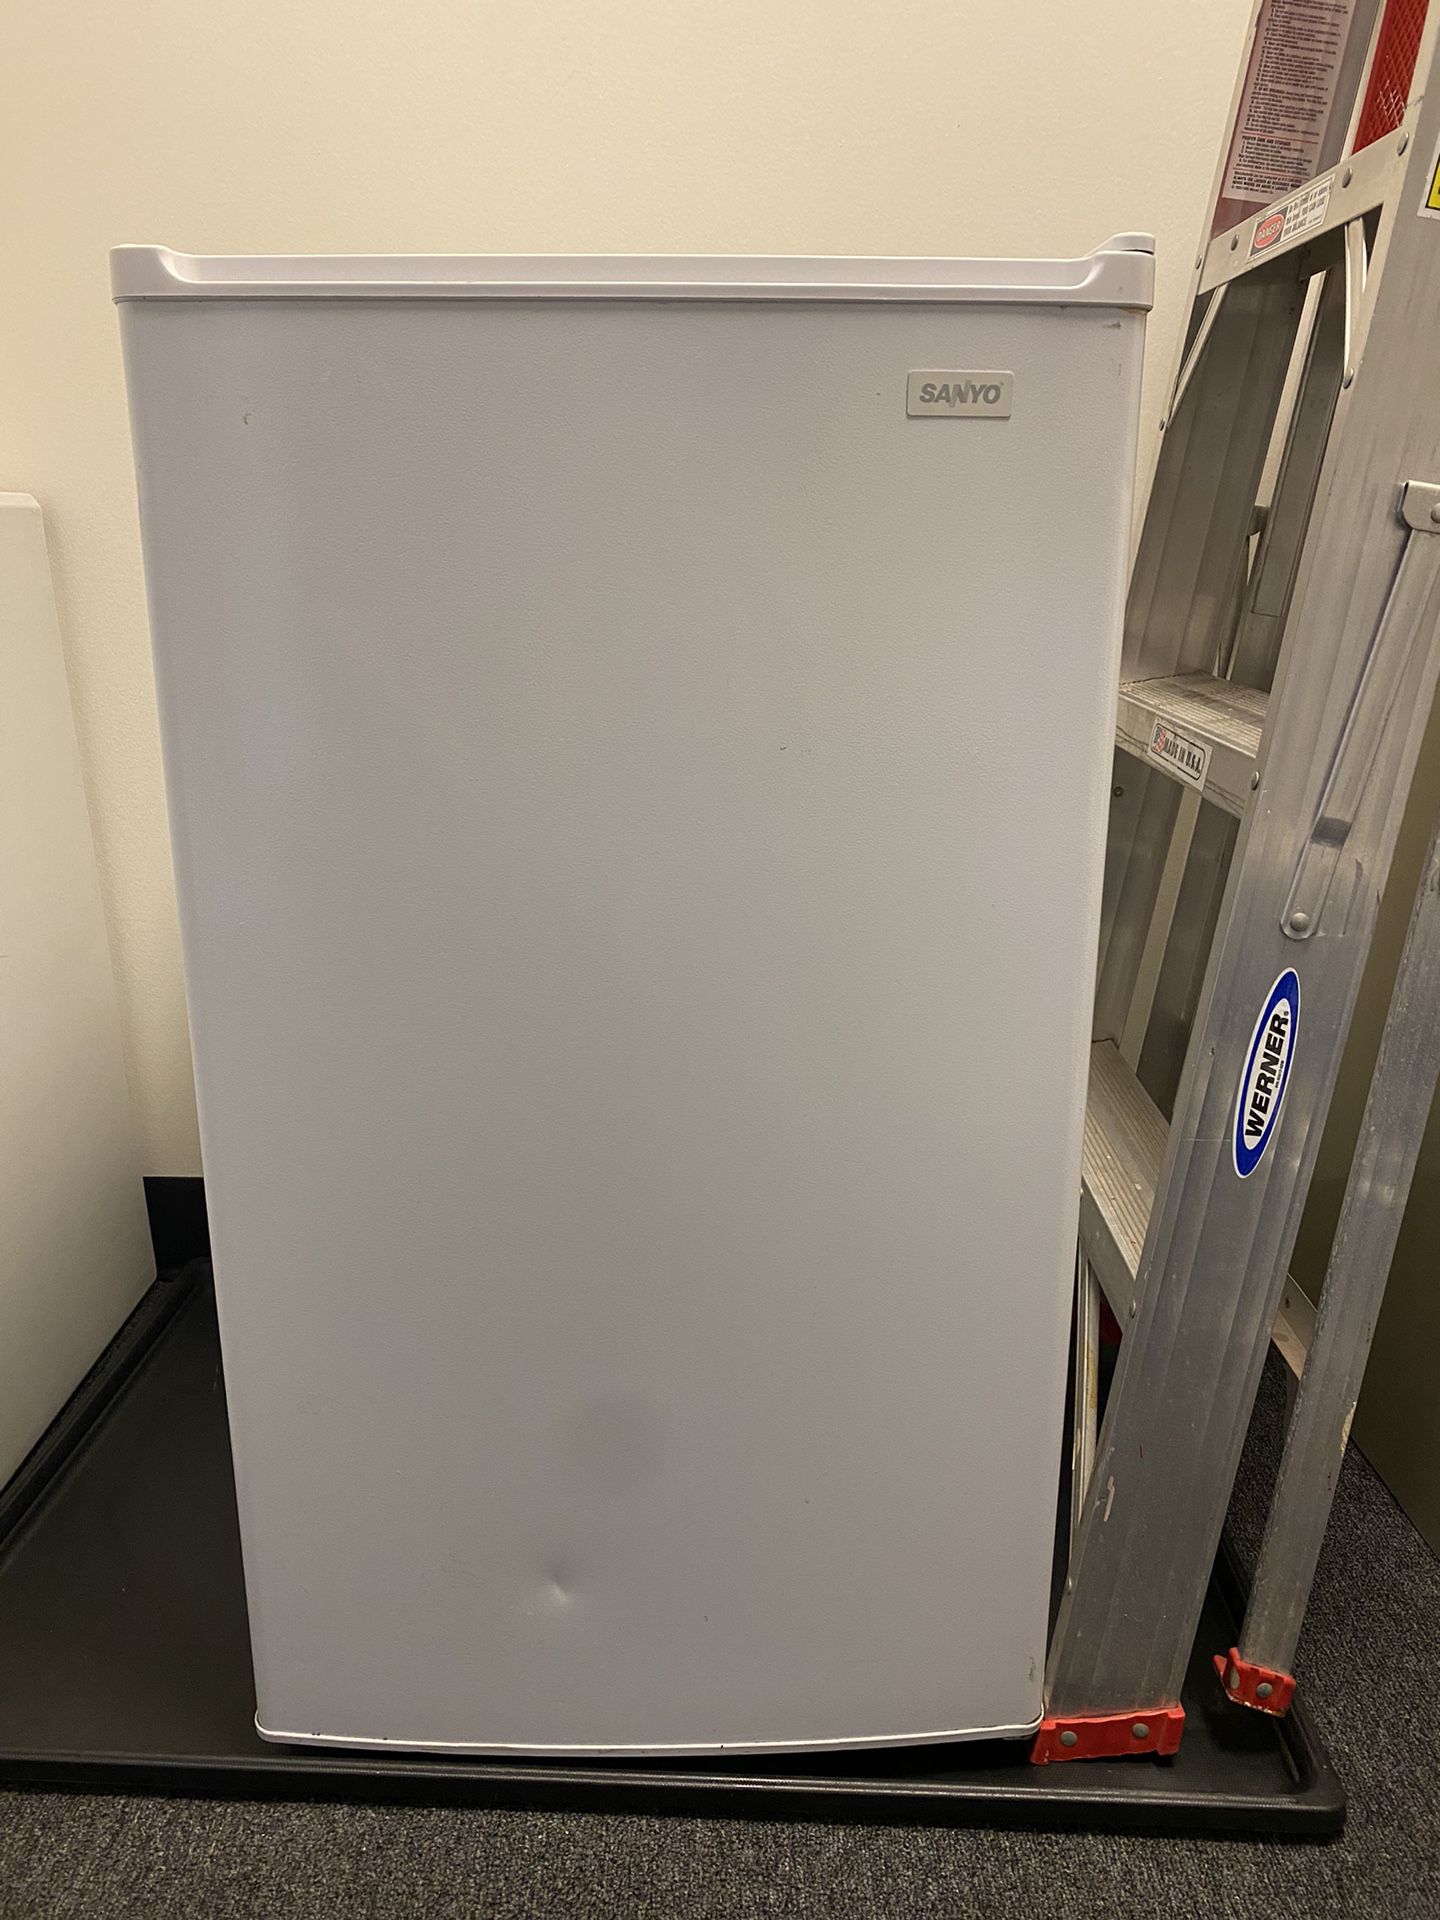 Sanyo mini fridge - white. 33” high, 18.5” wide and 18” deep.